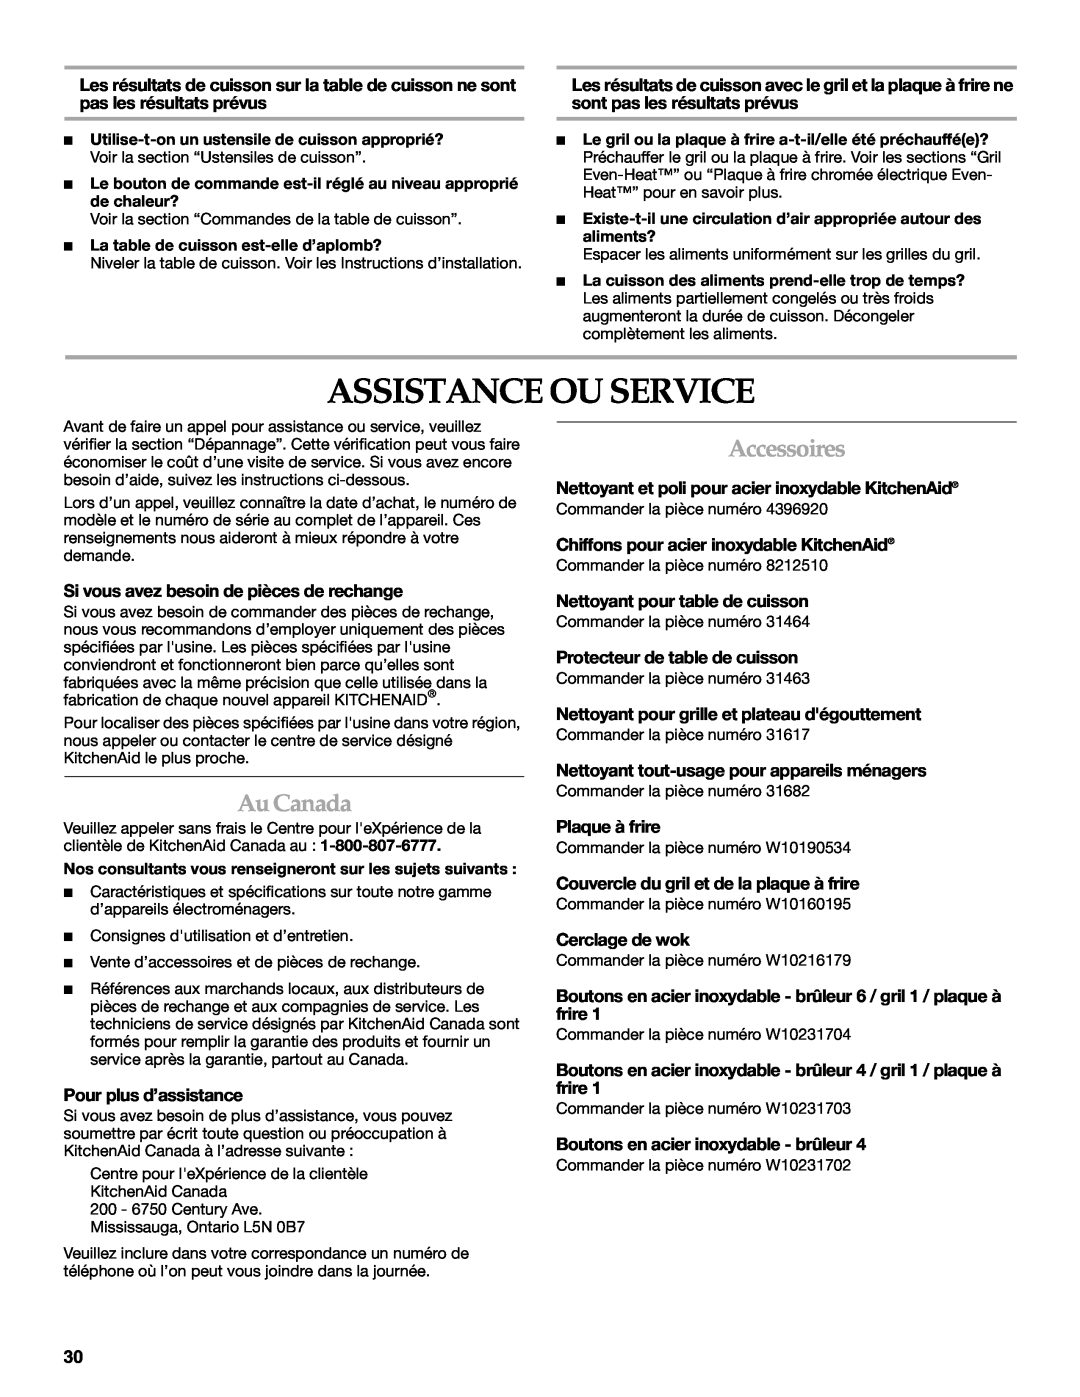 KitchenAid KGCU483VSS manual Assistance Ou Service, Au Canada, Accessoires, Si vous avez besoin de pièces de rechange 